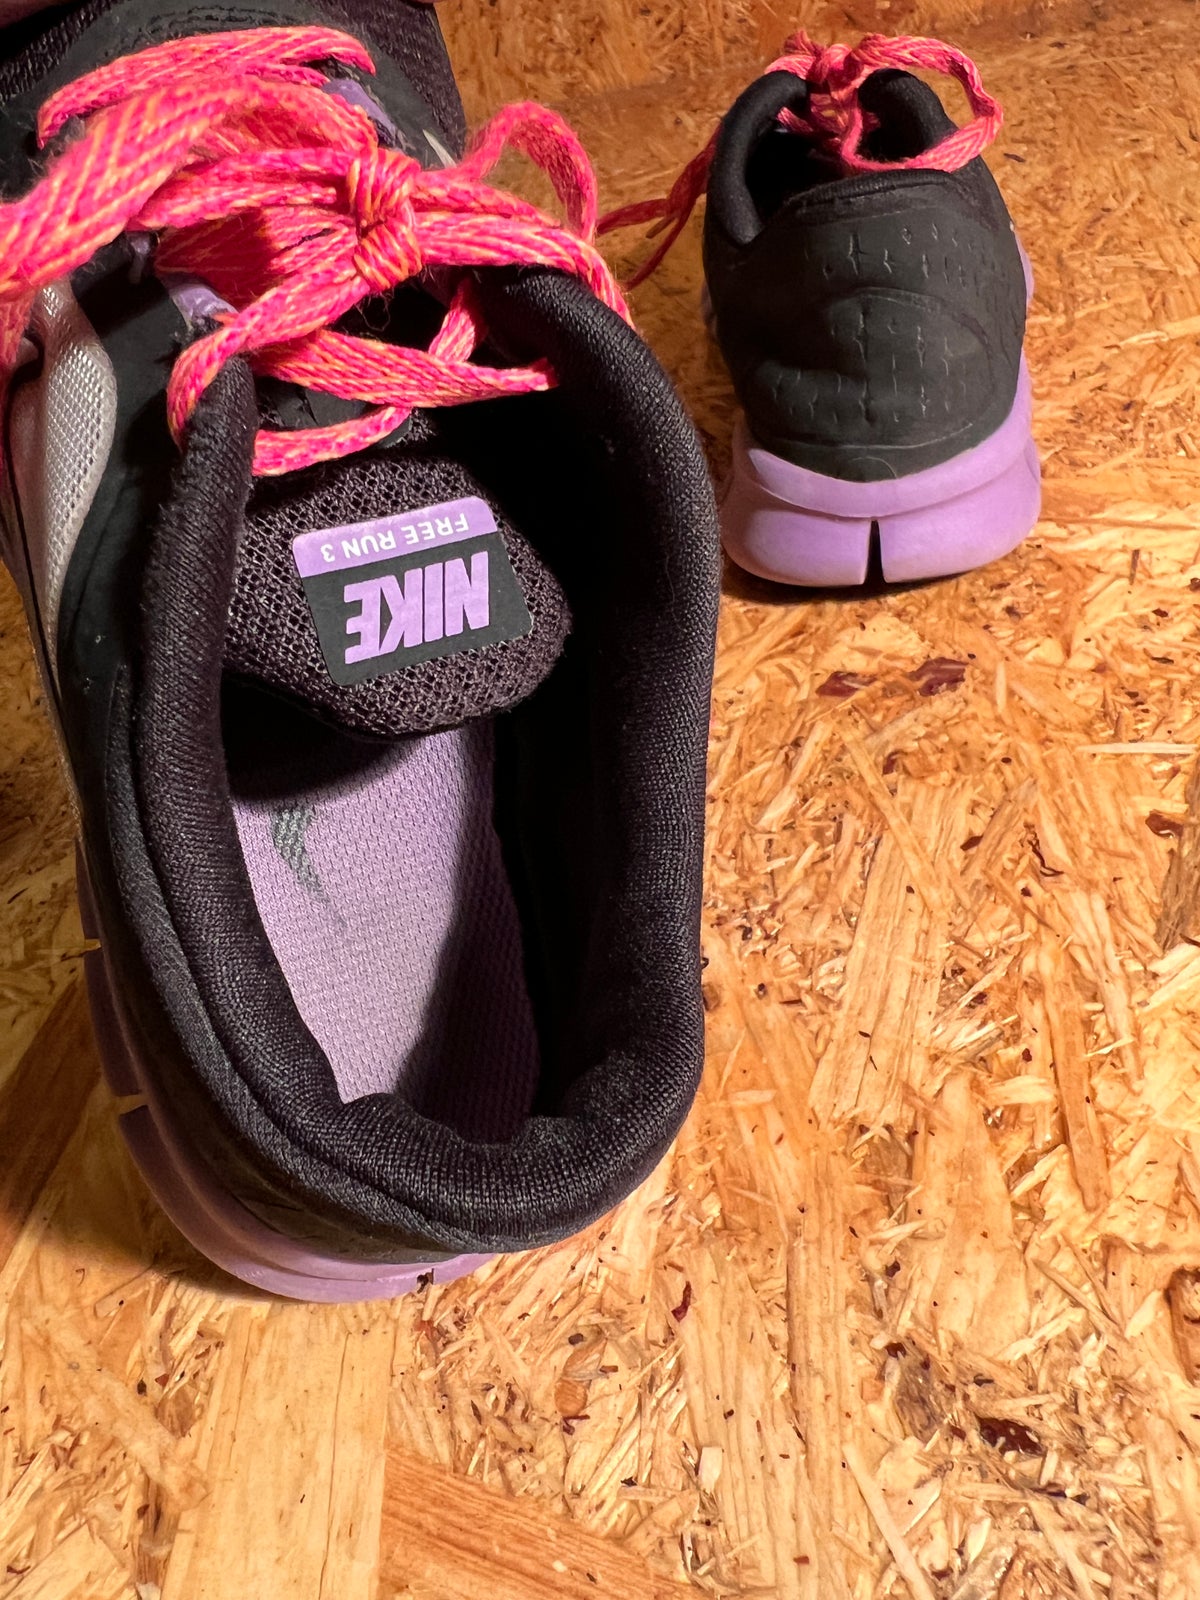 Sneakers, str. 35, Nike Free run – – Køb Salg af Nyt og Brugt